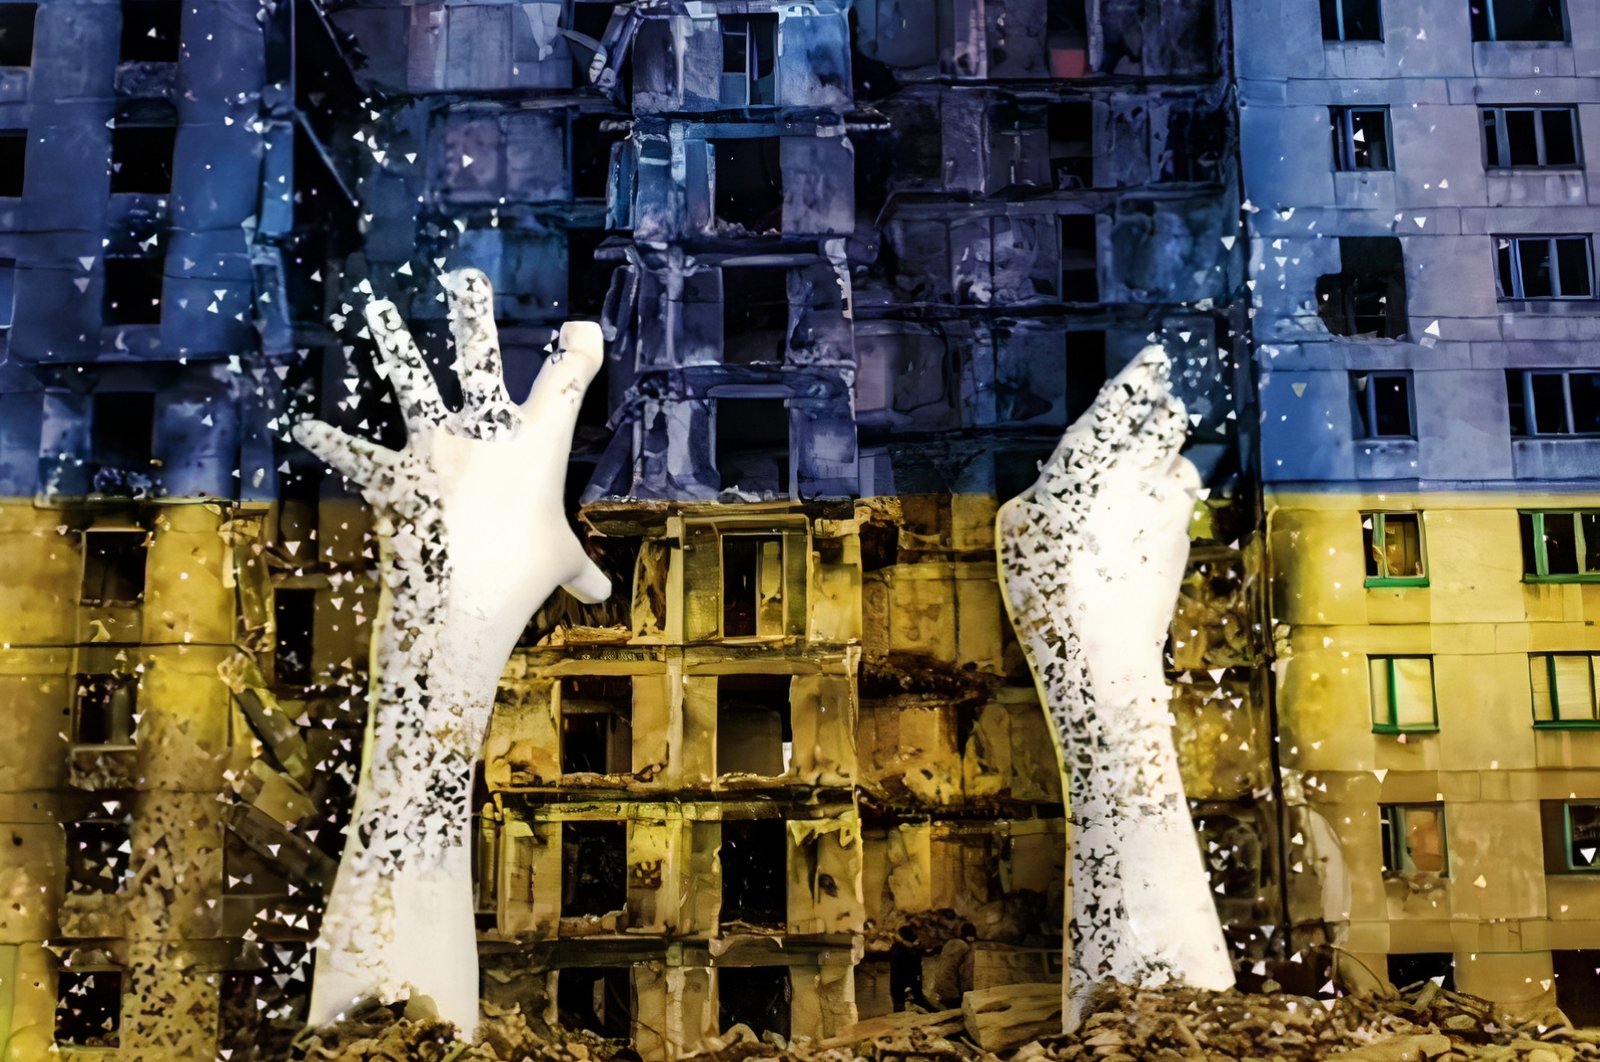 Seniman menggunakan NFT untuk mendukung Ukraina melawan invasi Rusia